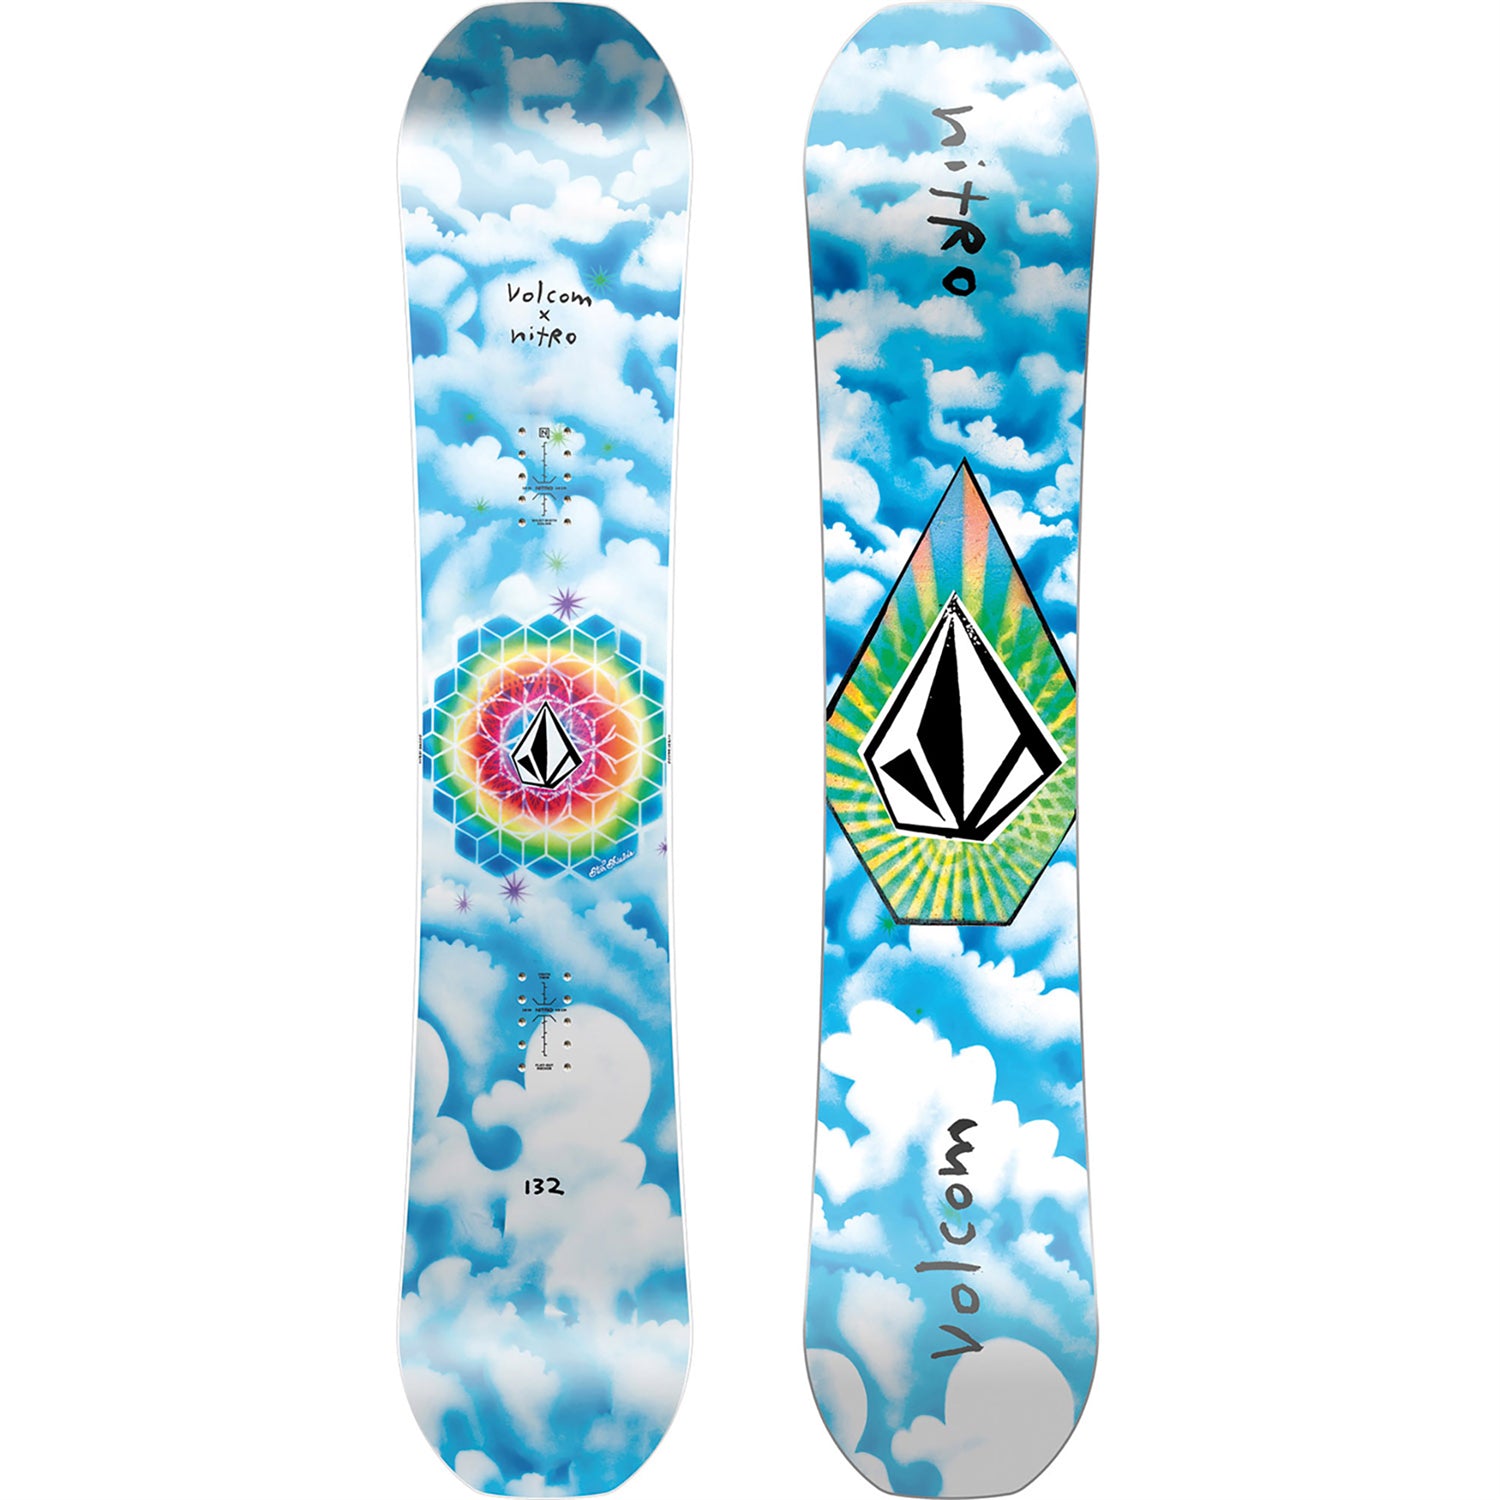 23/24 Snowboards - Board of Provo